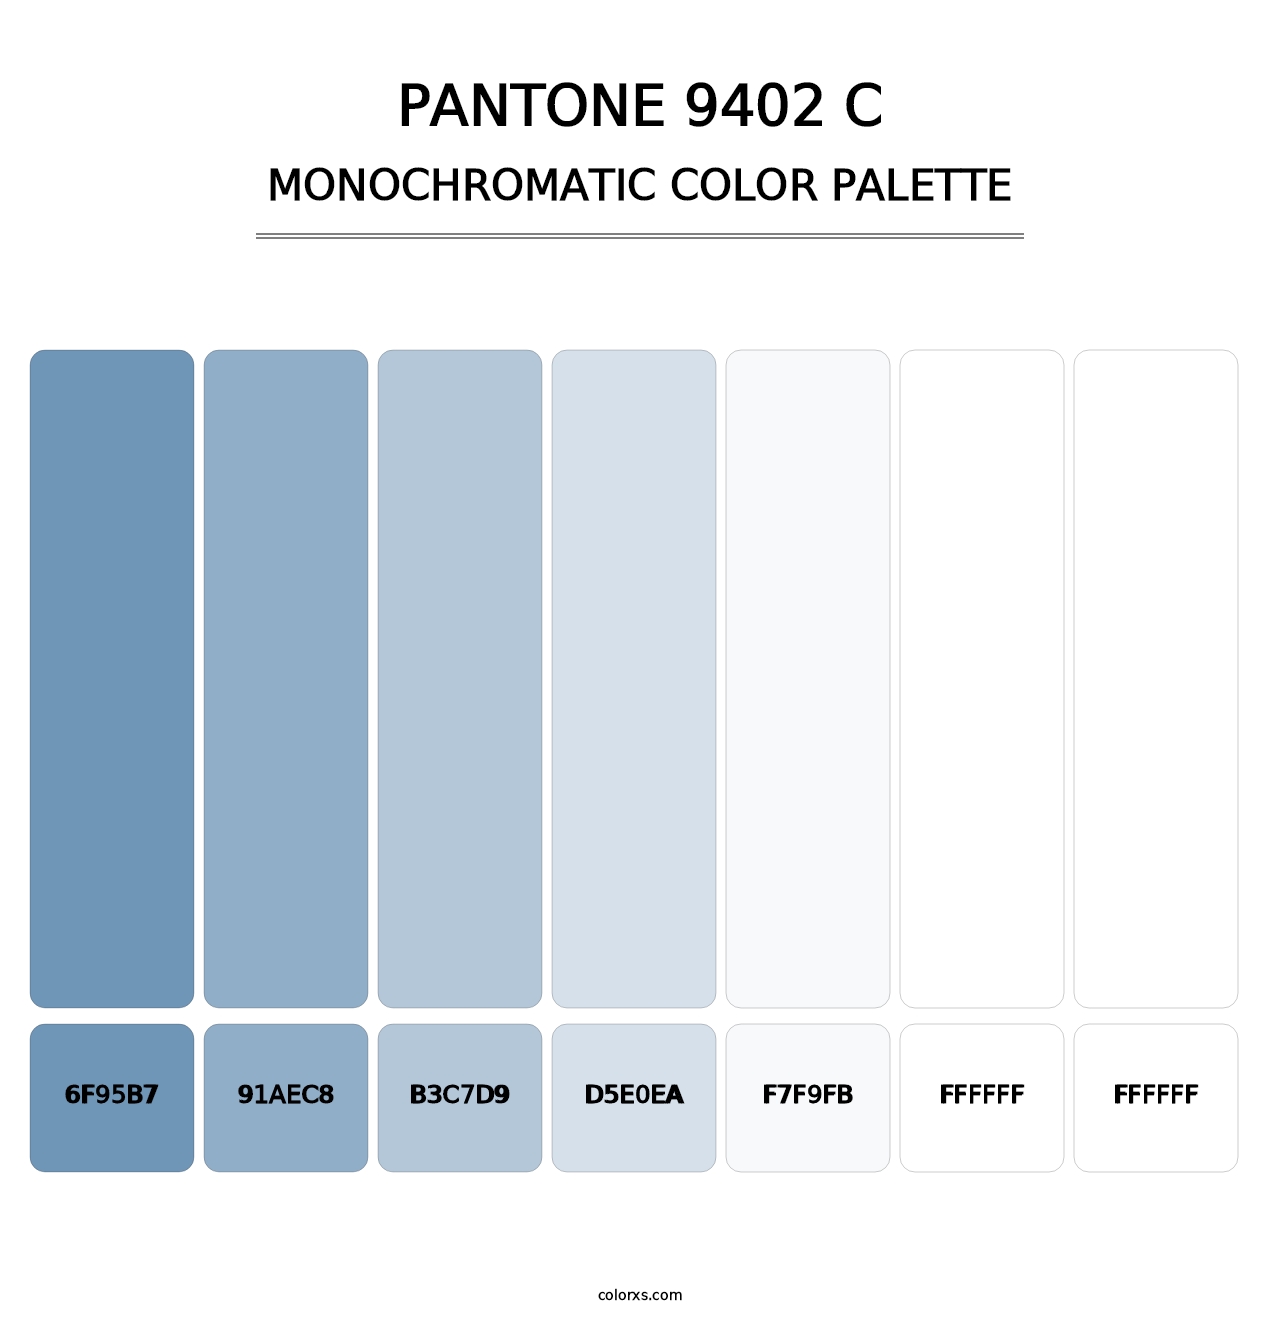 PANTONE 9402 C - Monochromatic Color Palette